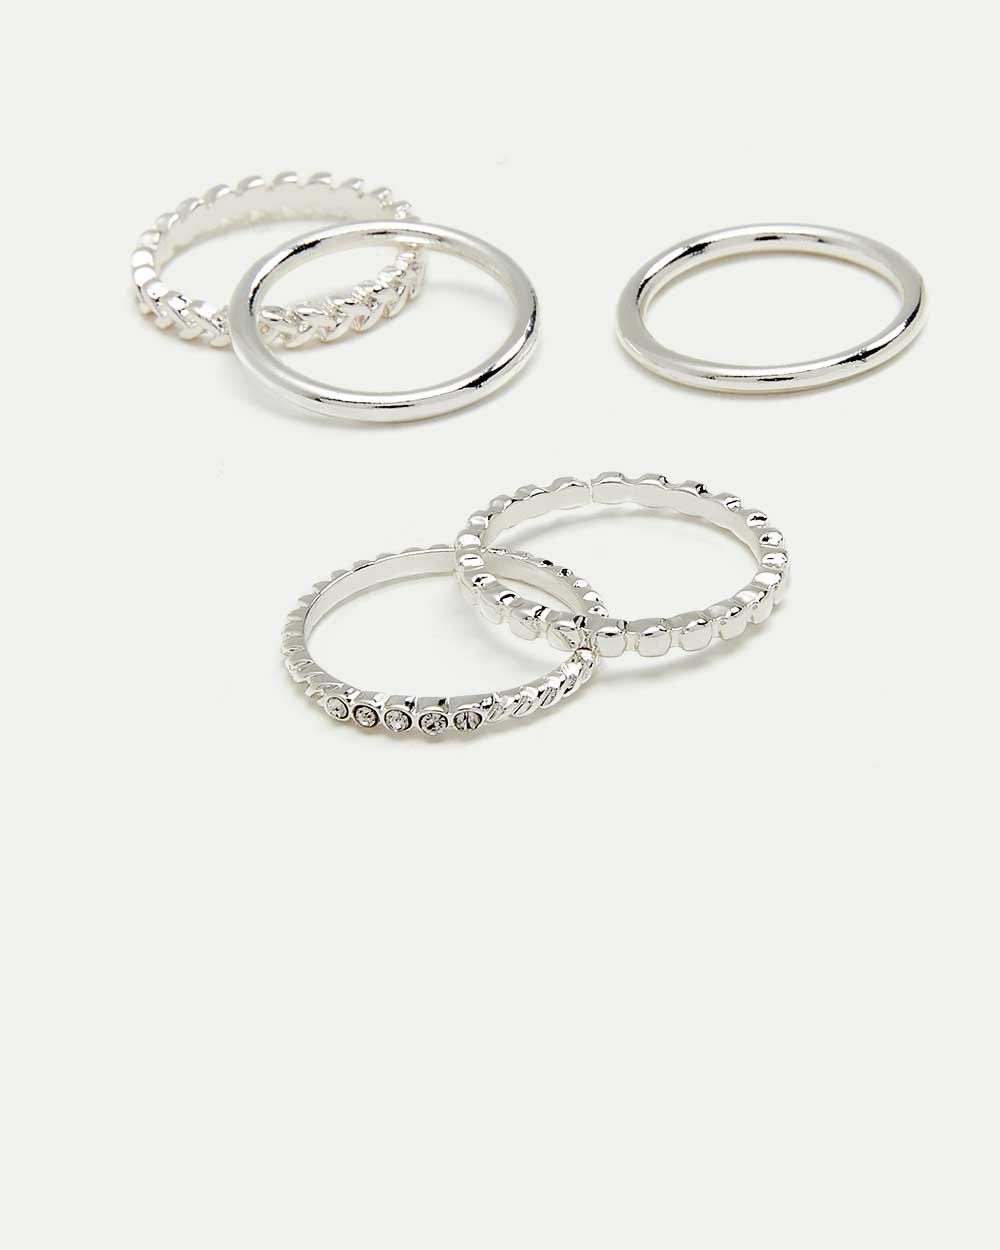 5-Pack Silver Rings